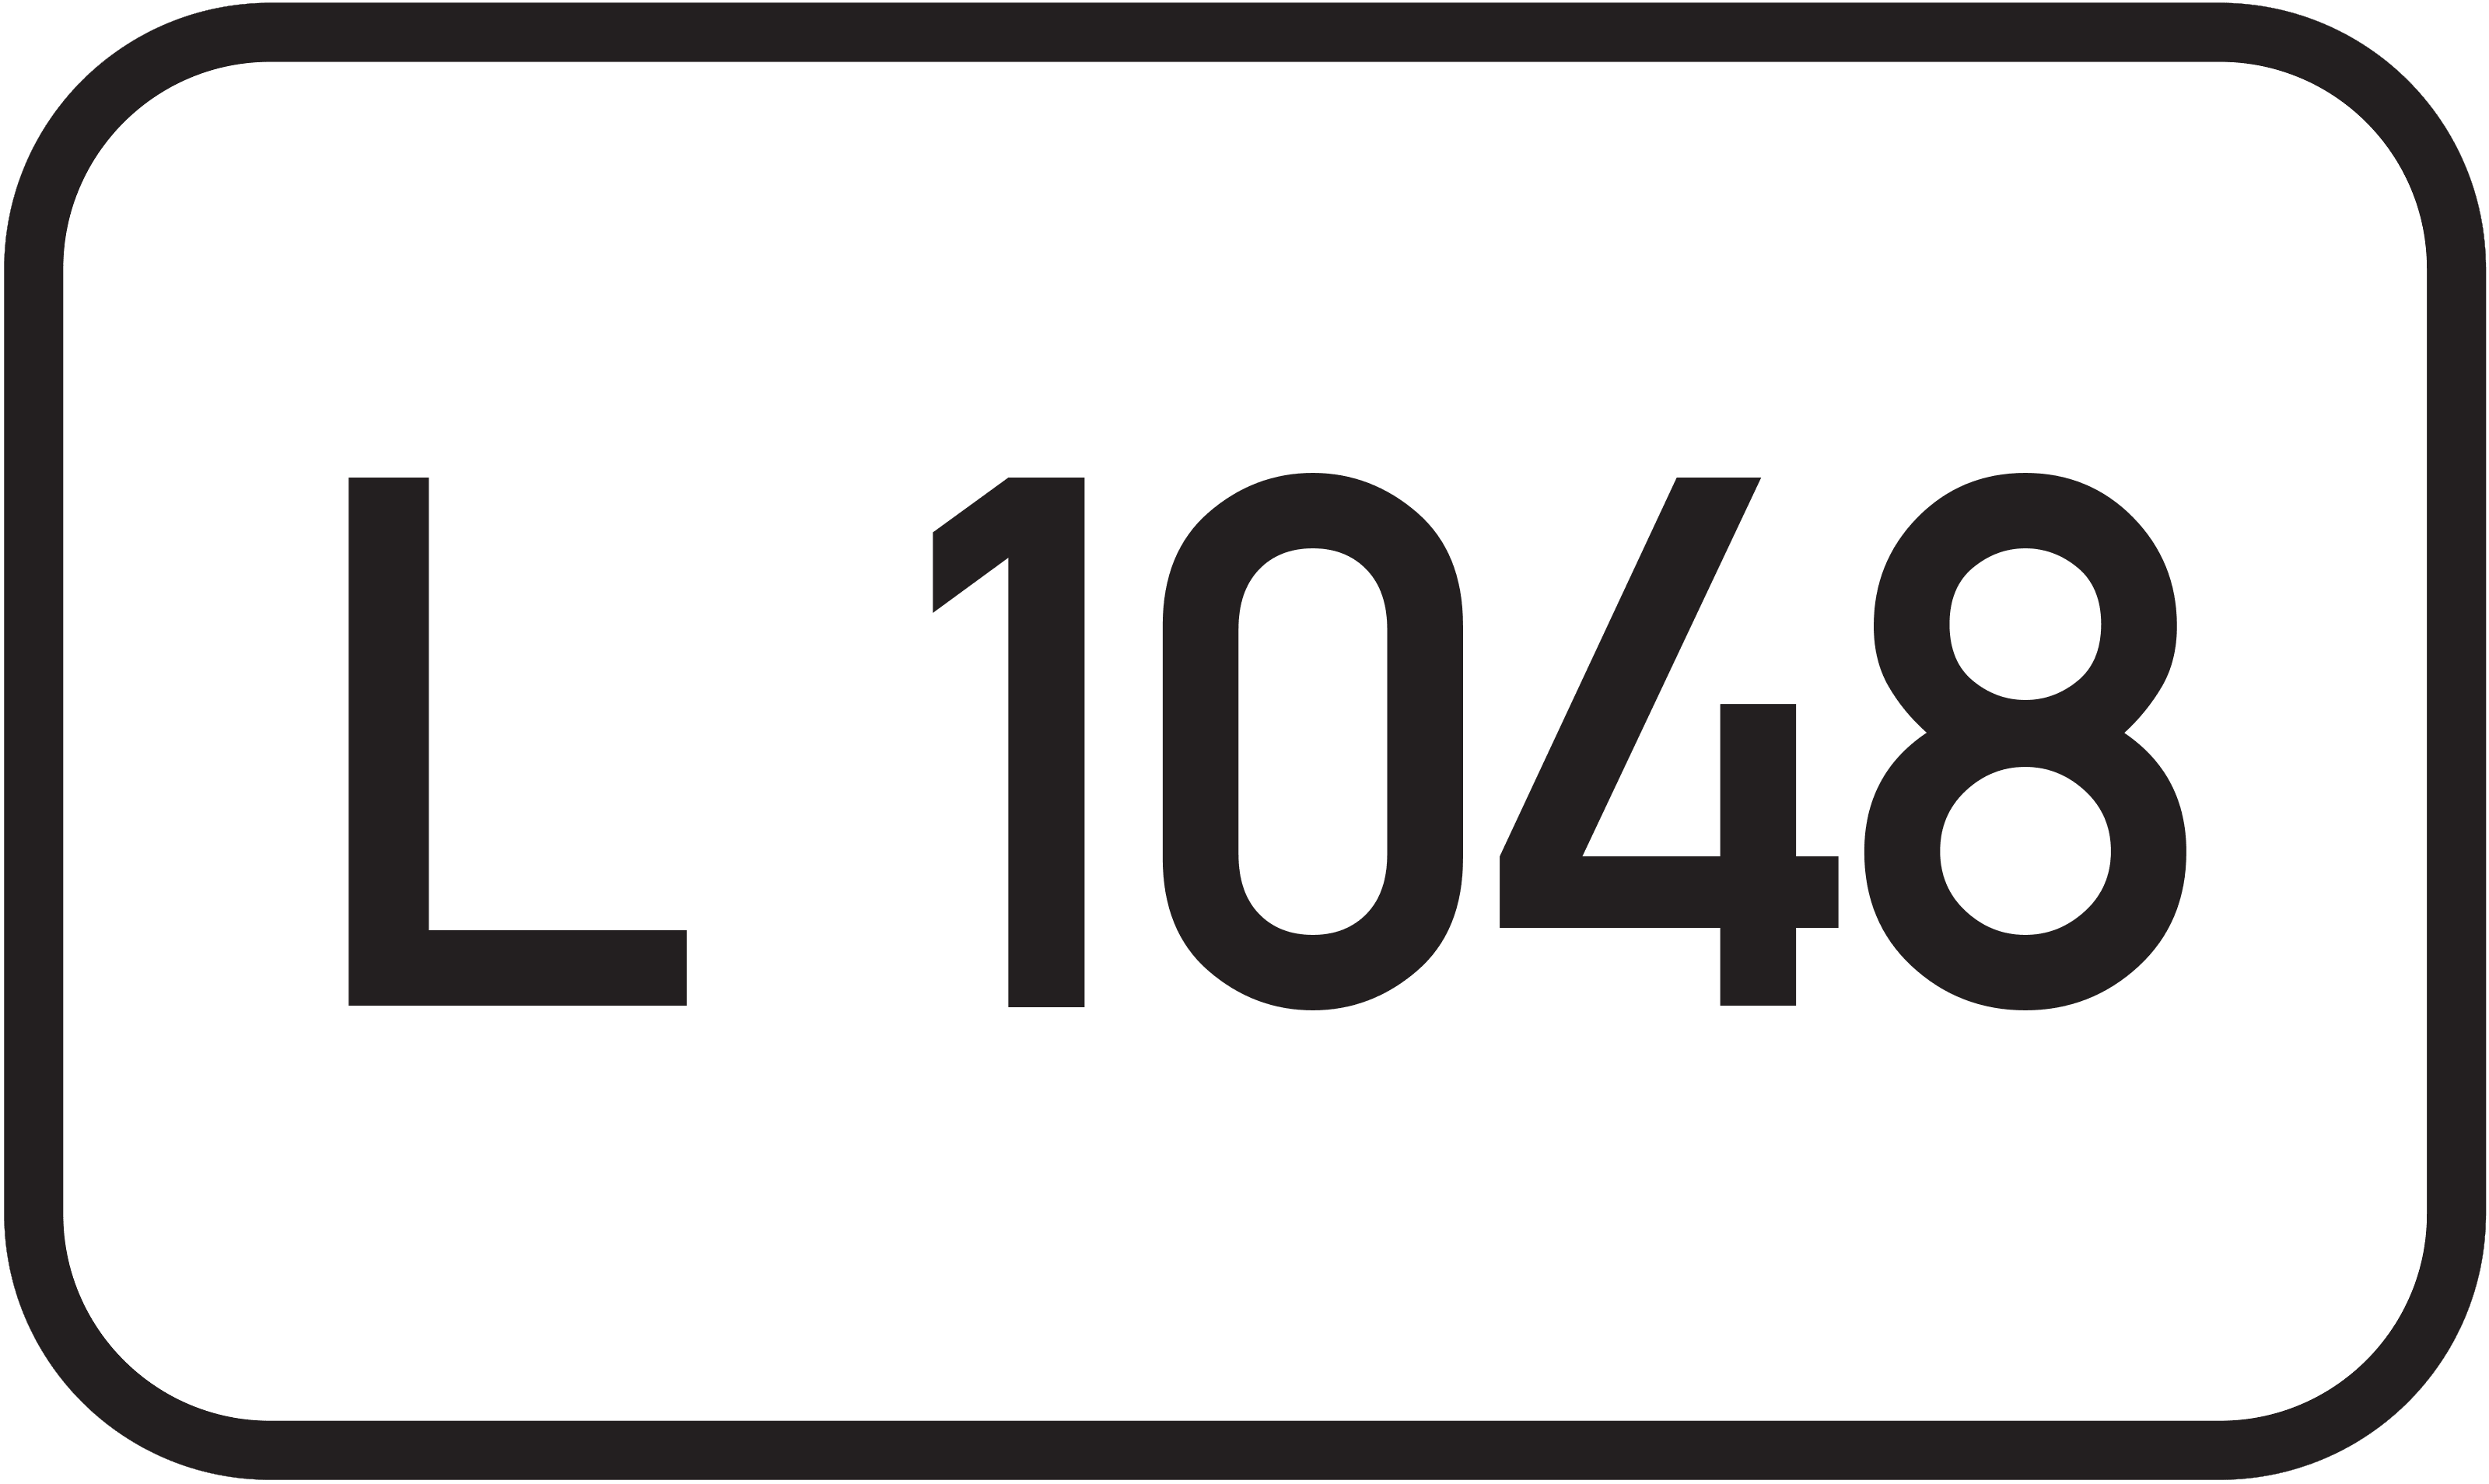 Landesstraße L 1048